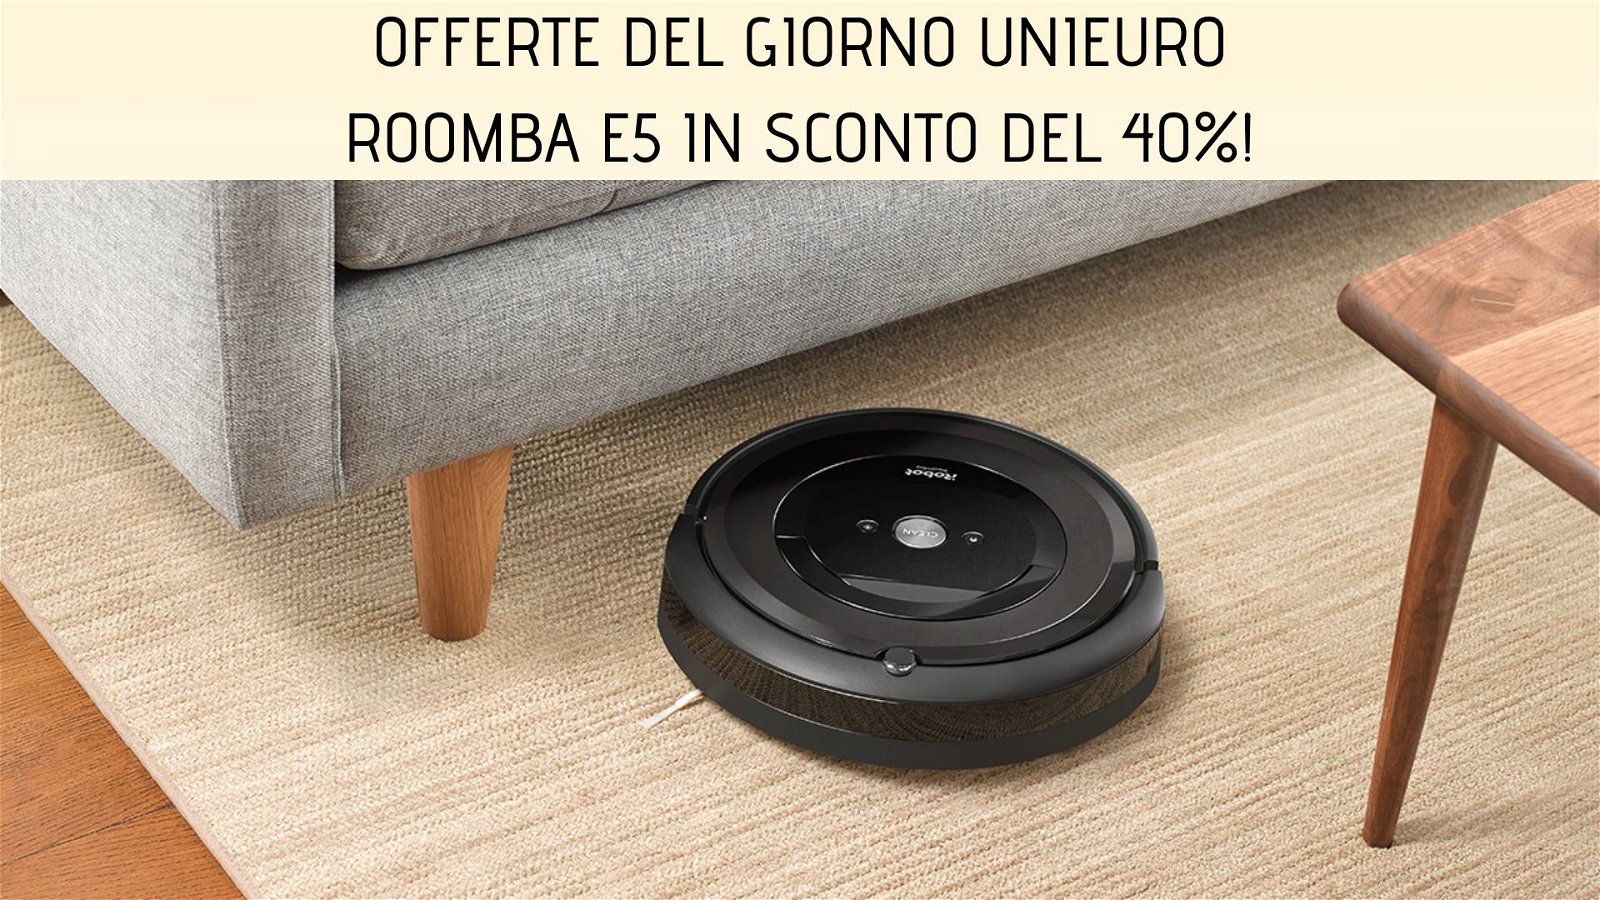 Immagine di Offerte del giorno Unieuro: iRobot Roomba e5 scontato del 40%!